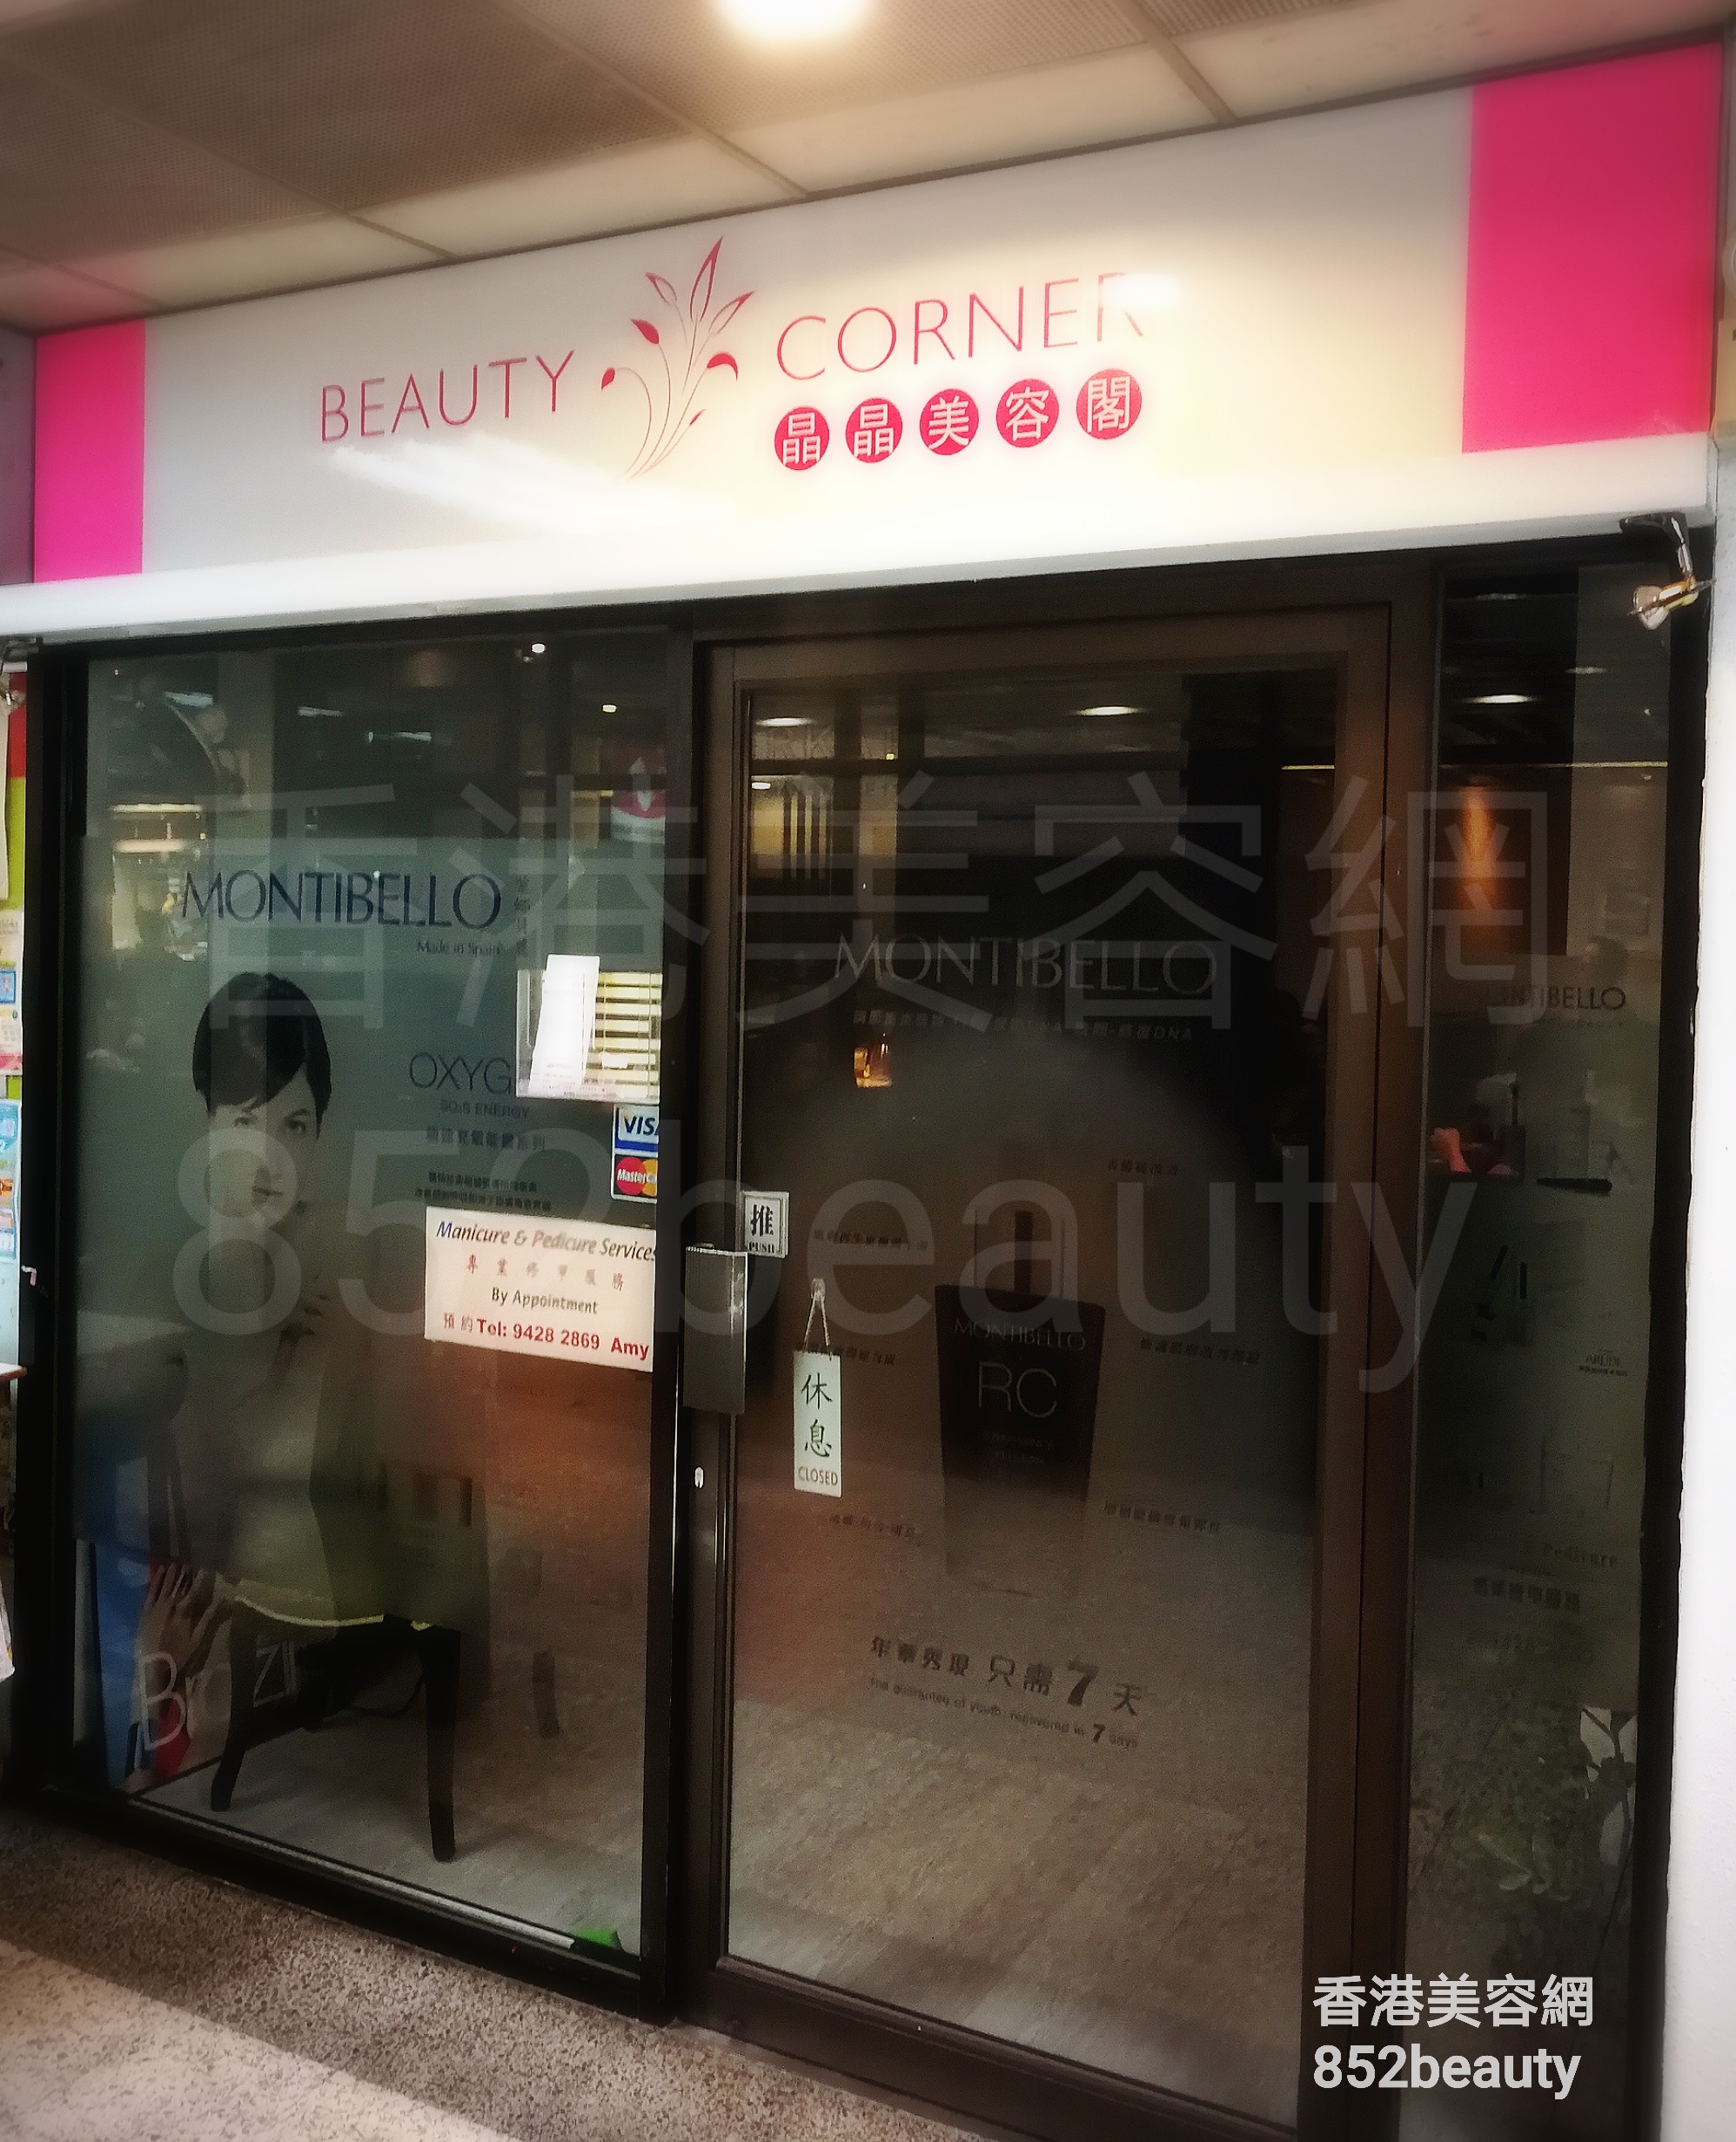 香港美容網 Hong Kong Beauty Salon 美容院 / 美容師: BEAUTY CORNER 晶晶美容閣